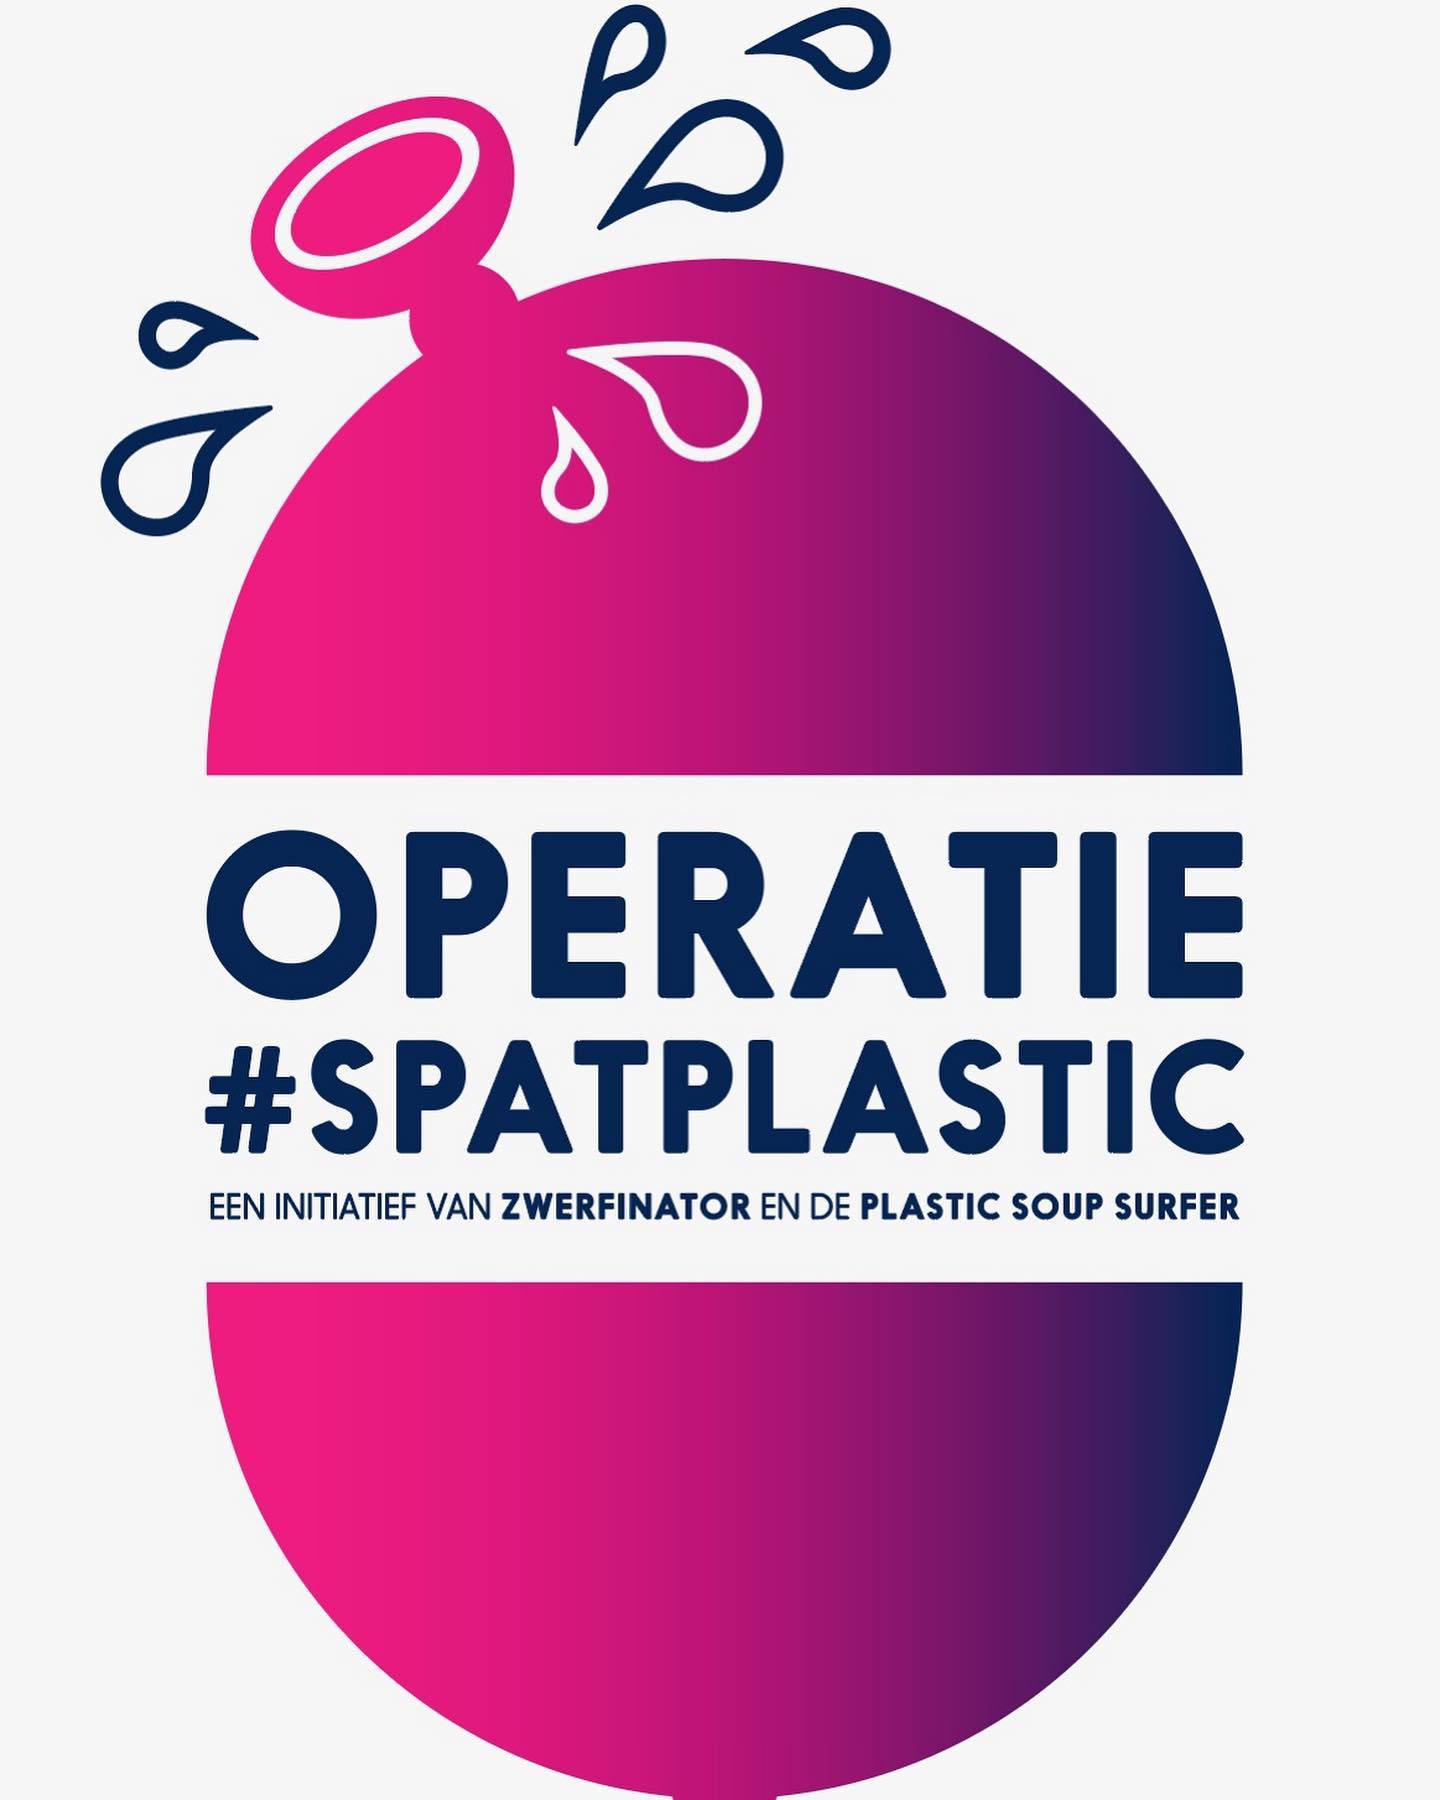 Operatie splatplastic